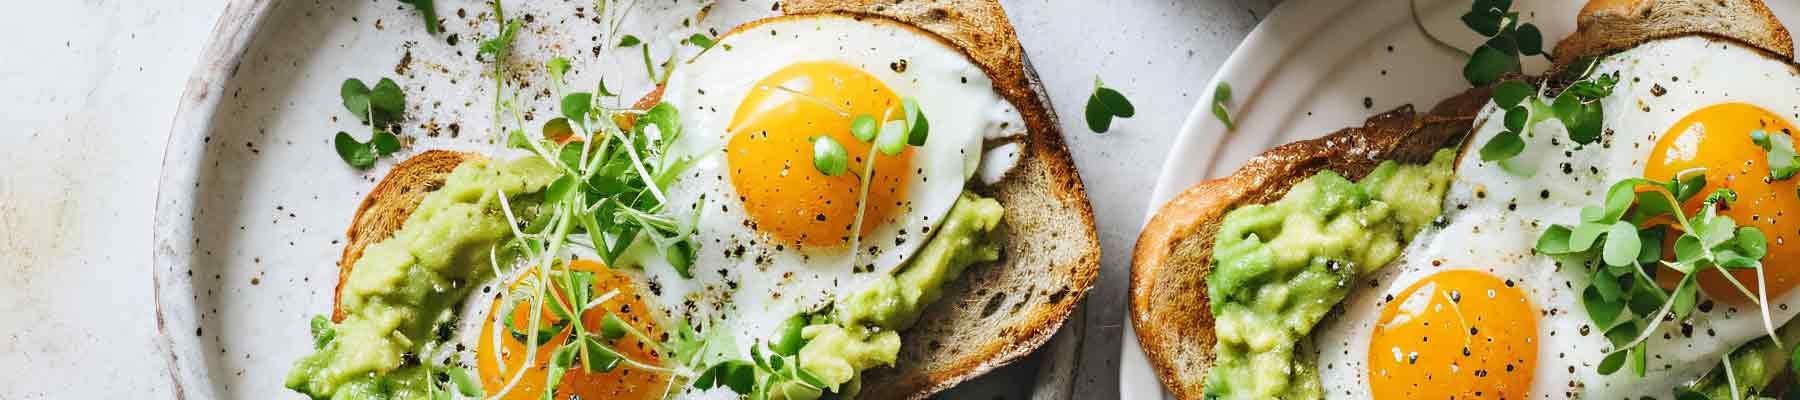 L'uovo: uno degli alimenti più pregiati.
